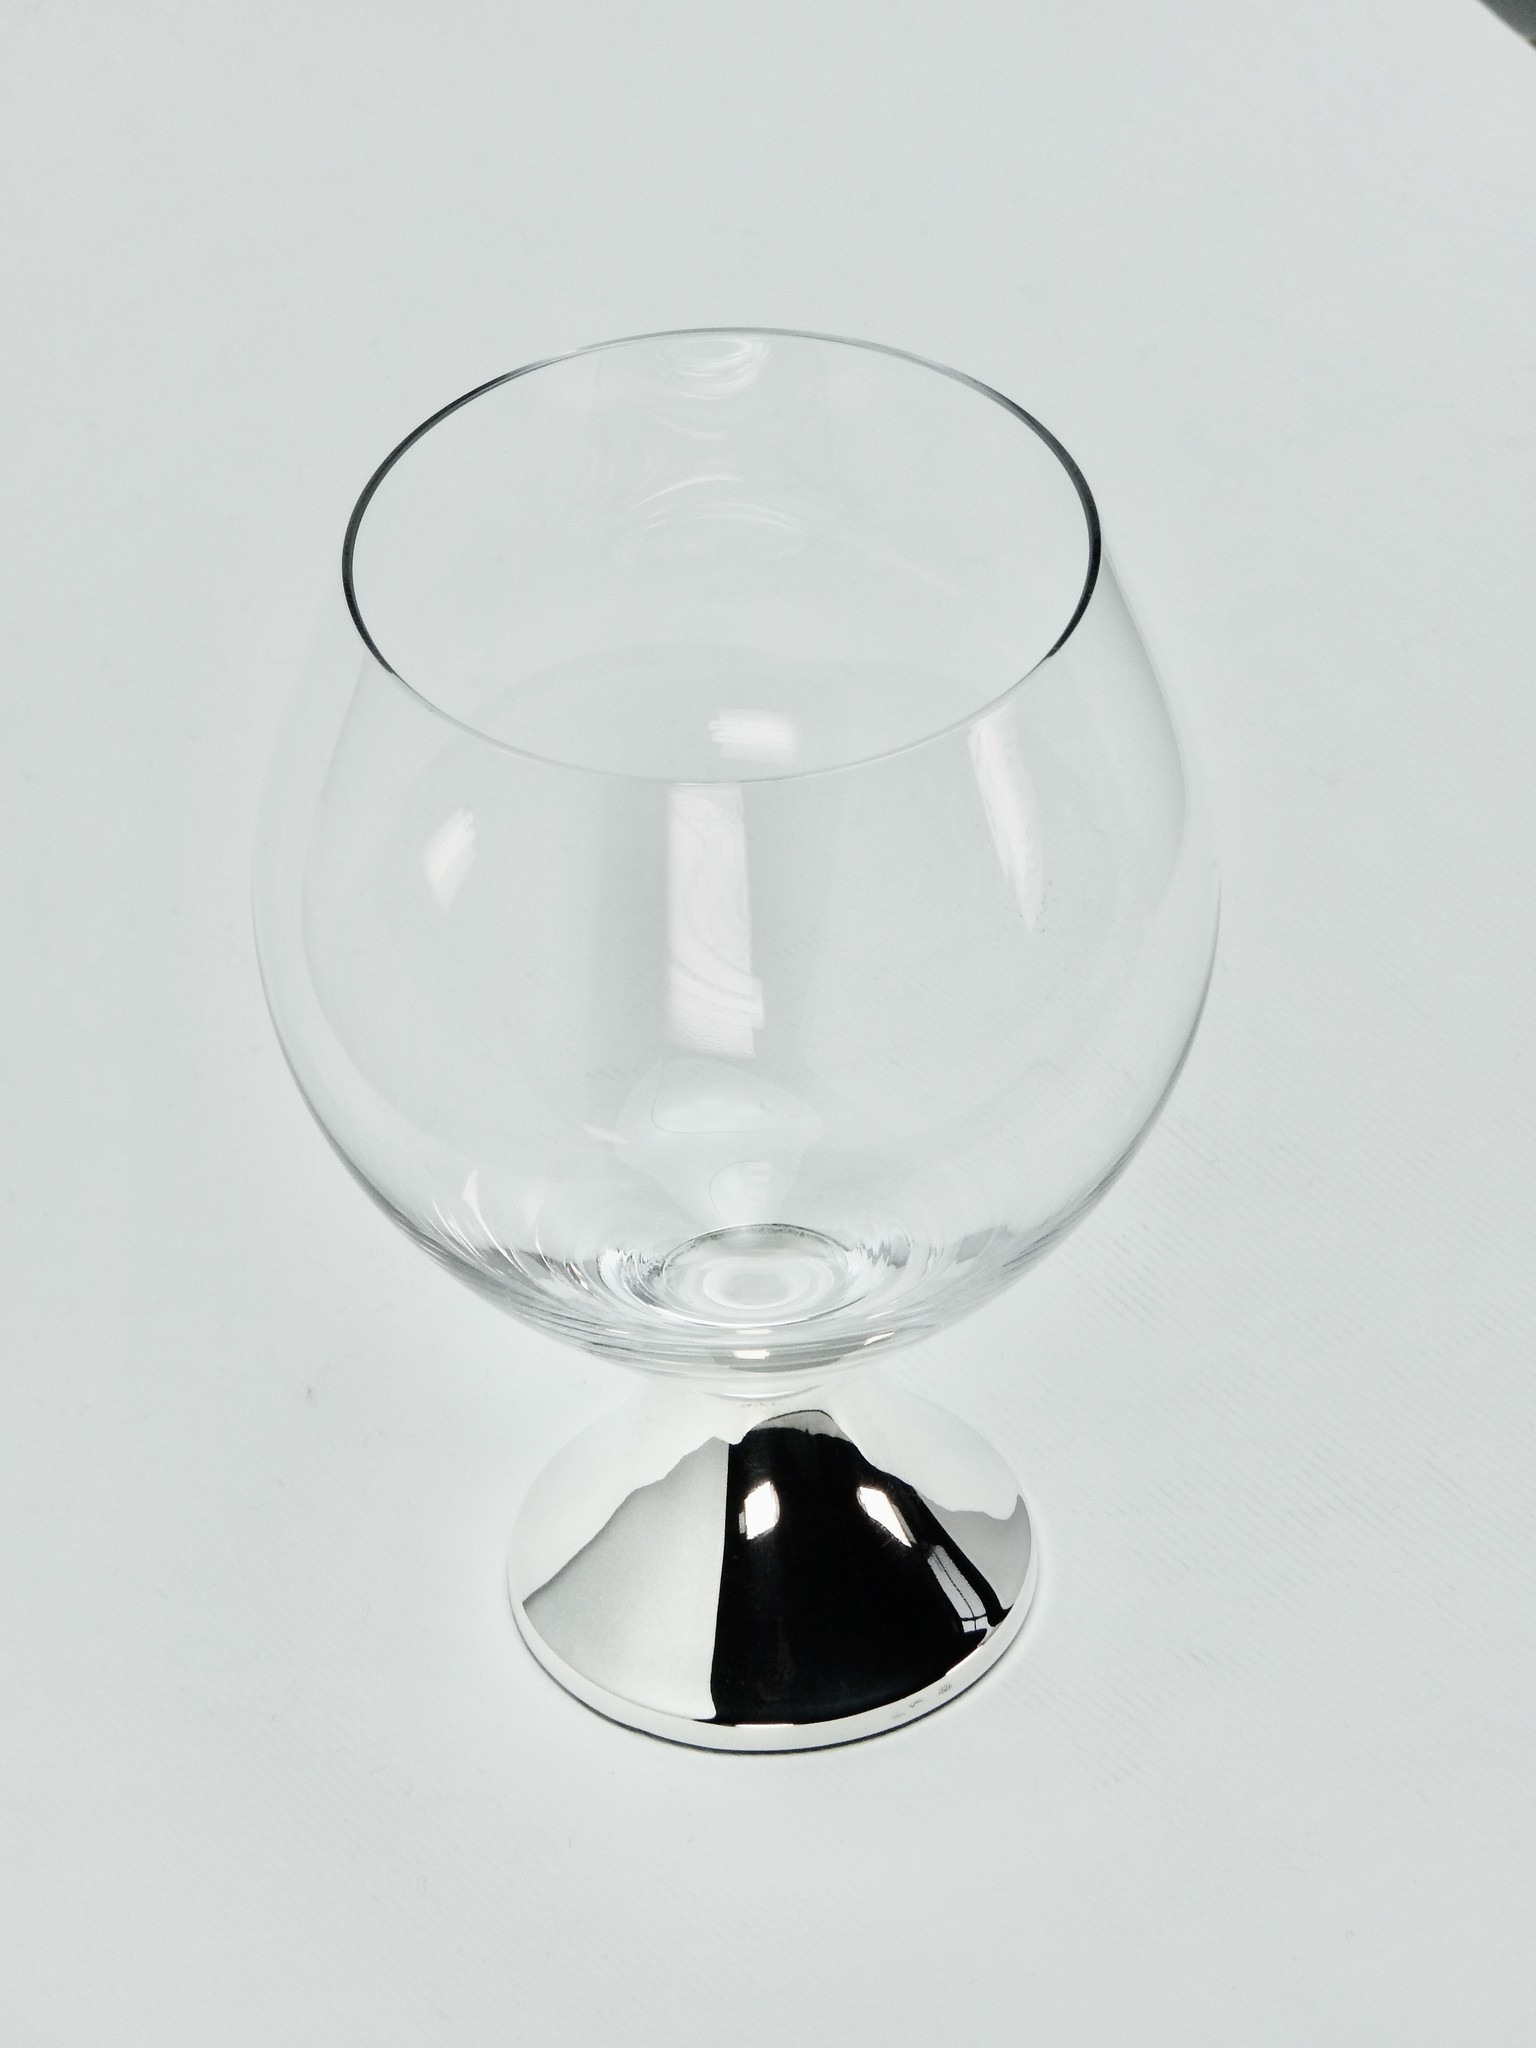 Kristallen cognacglas met voet in 925 zilver, 117 mm hoog